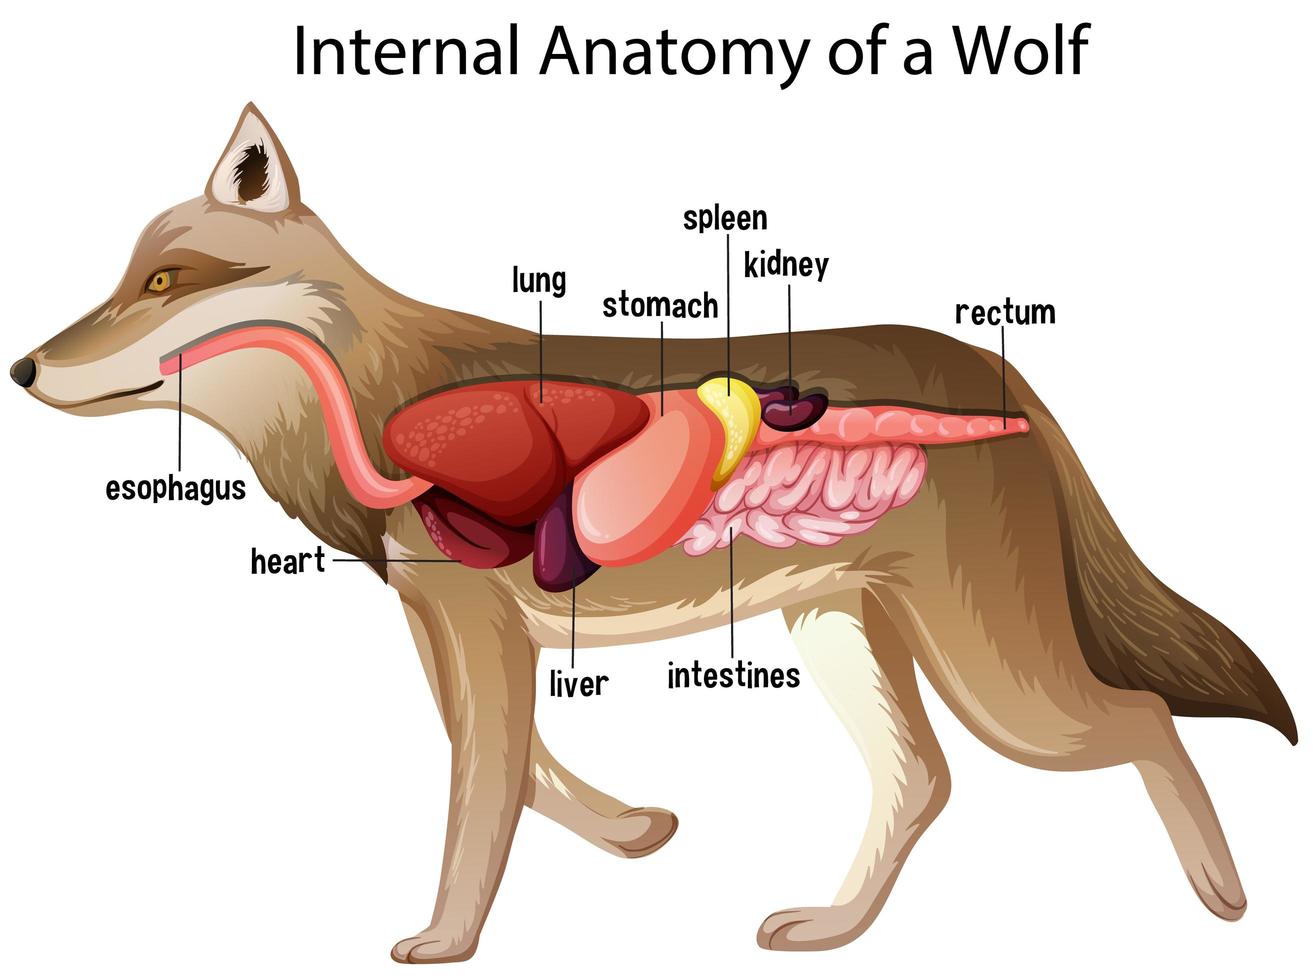 anatomia interna de um lobo vetor